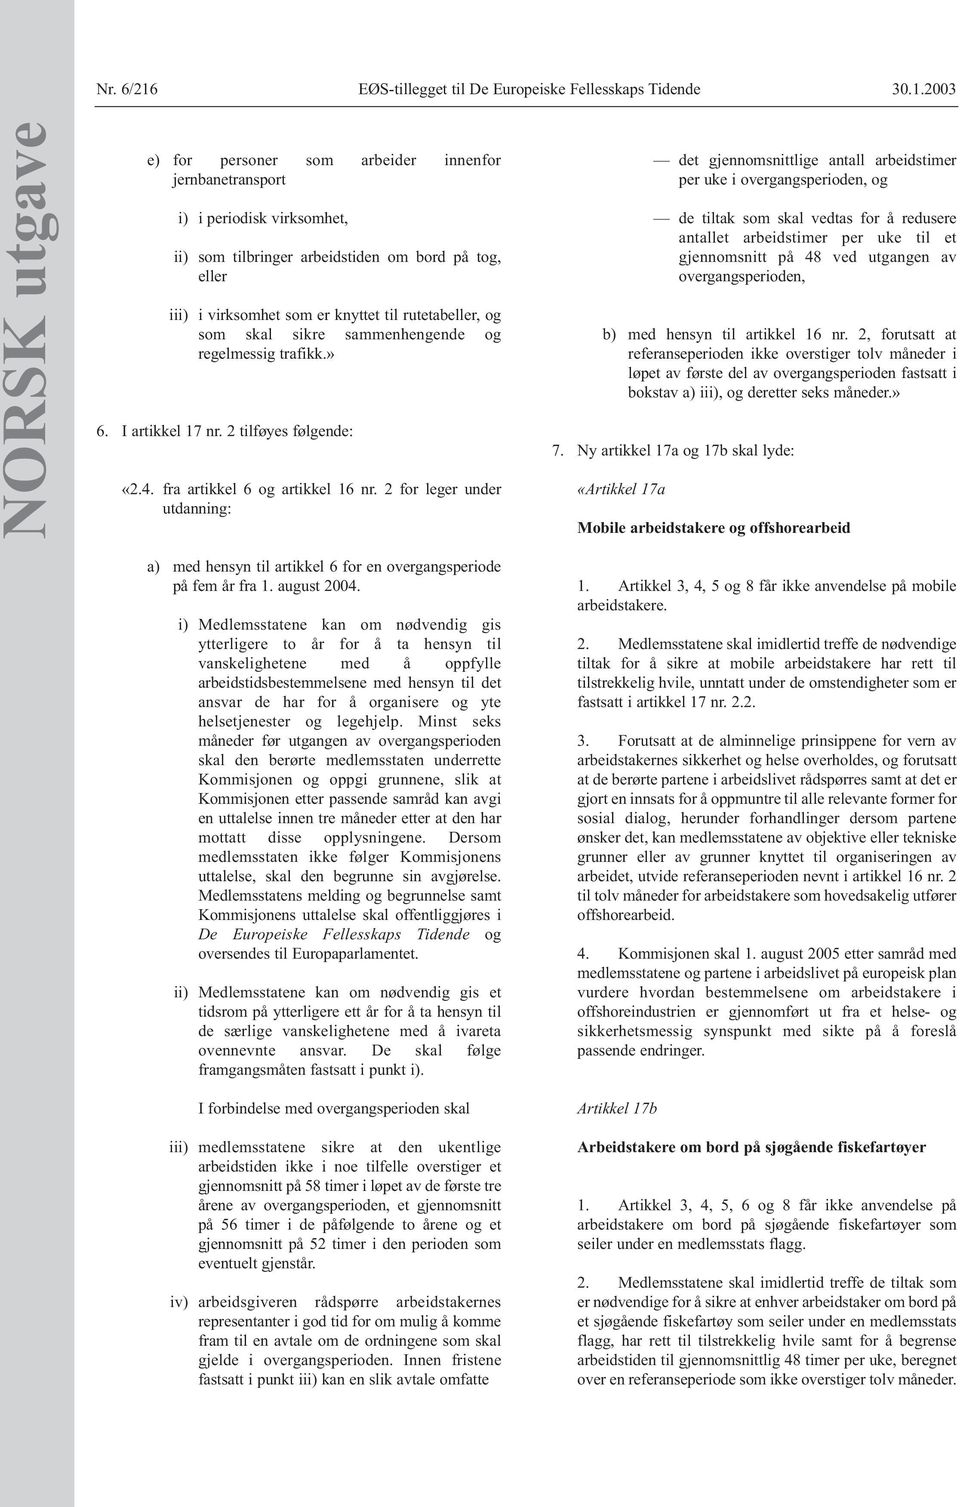 2 for leger under utdanning: a) med hensyn til artikkel 6 for en overgangsperiode på fem år fra 1. august 2004.